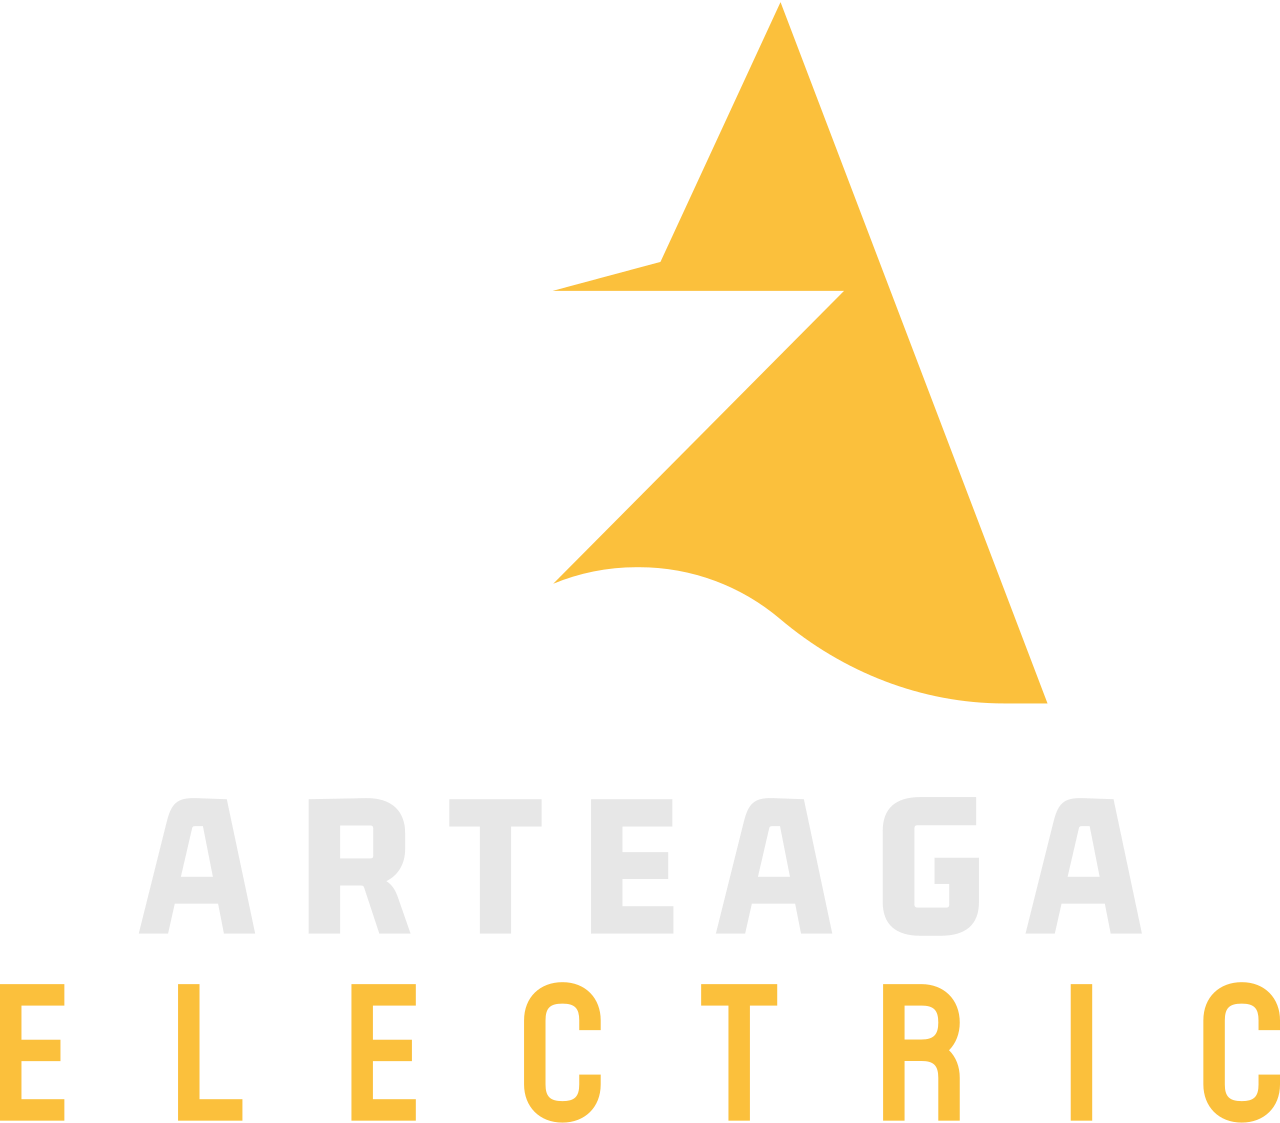 Arteaga's logo